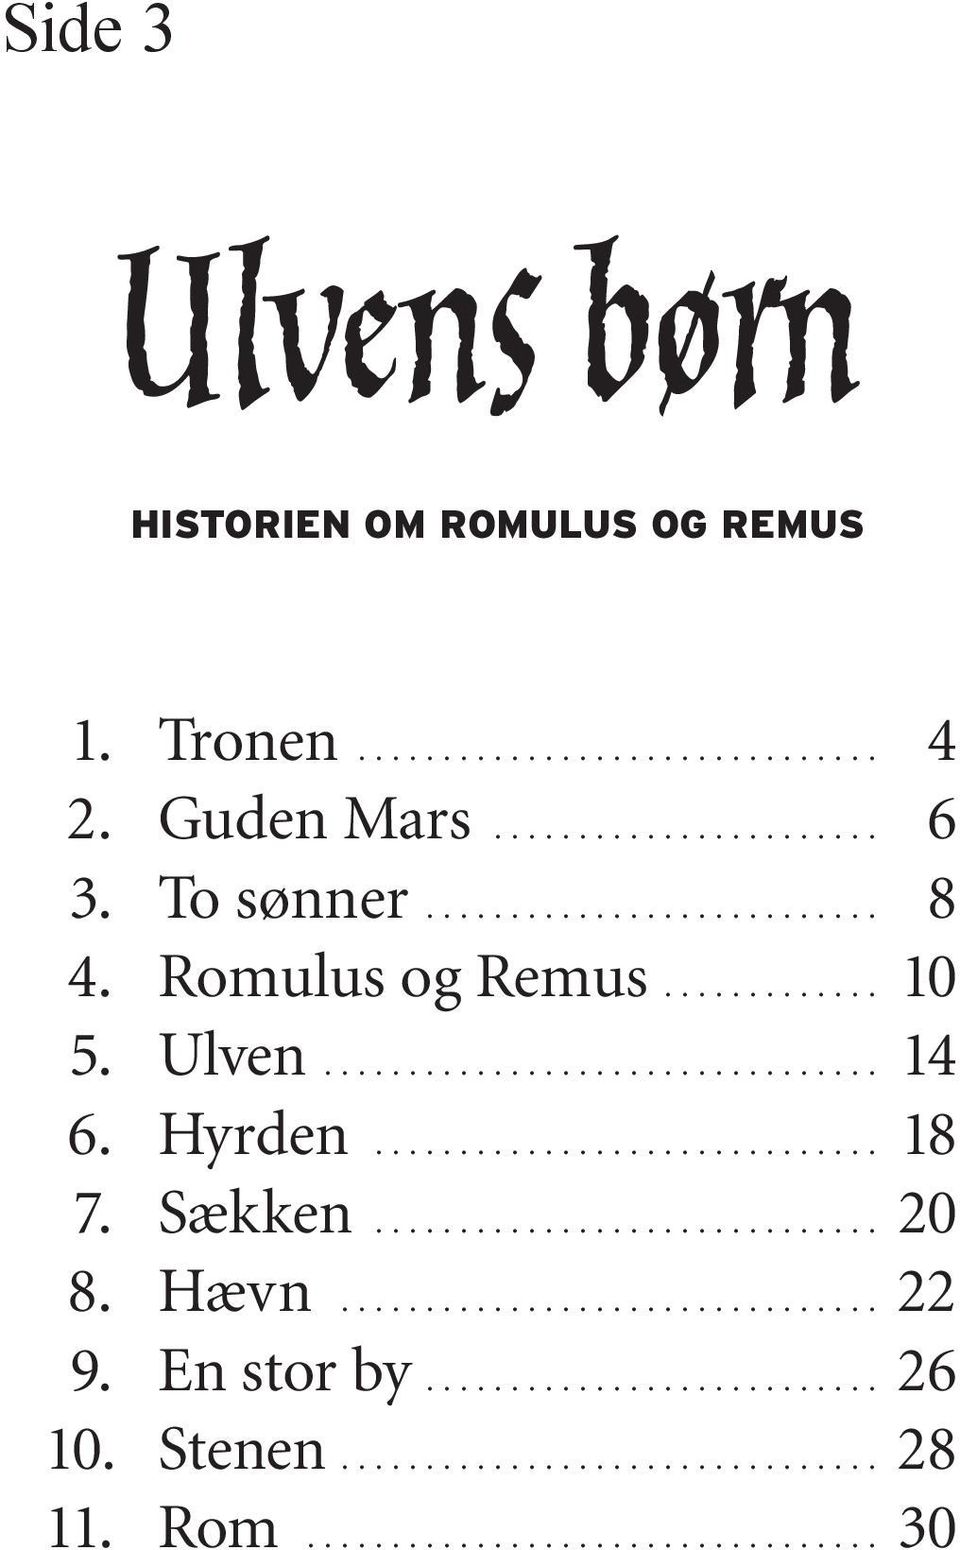 Romulus og Remus 10 5 Ulven 14 6 Hyrden 18 7